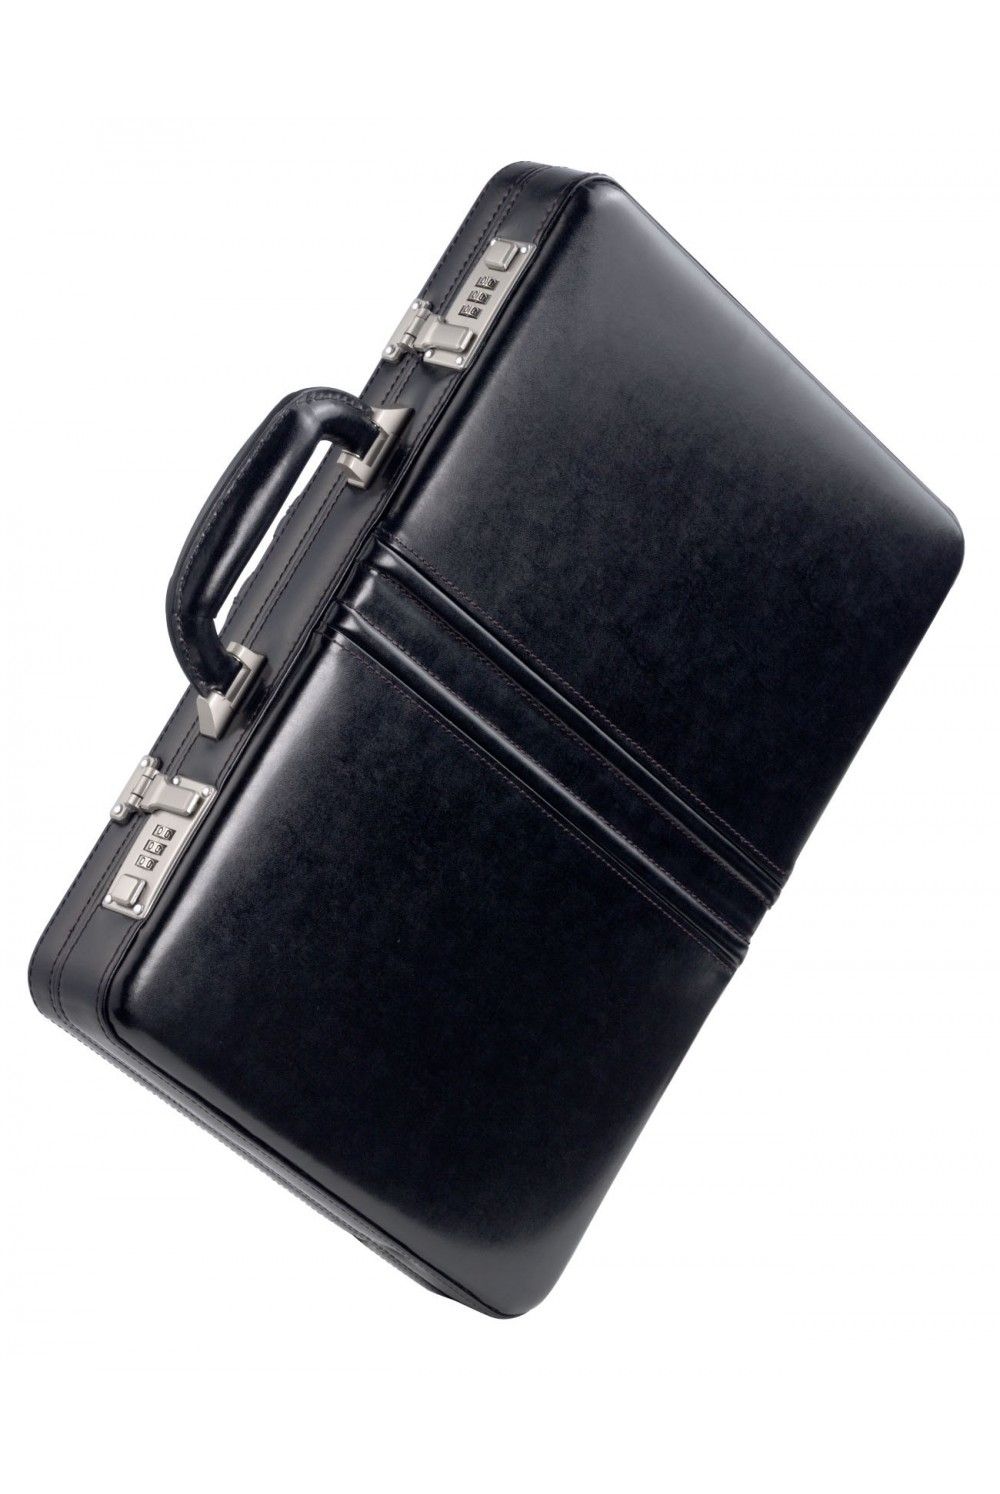 DERMATA briefcase cowhide 1242